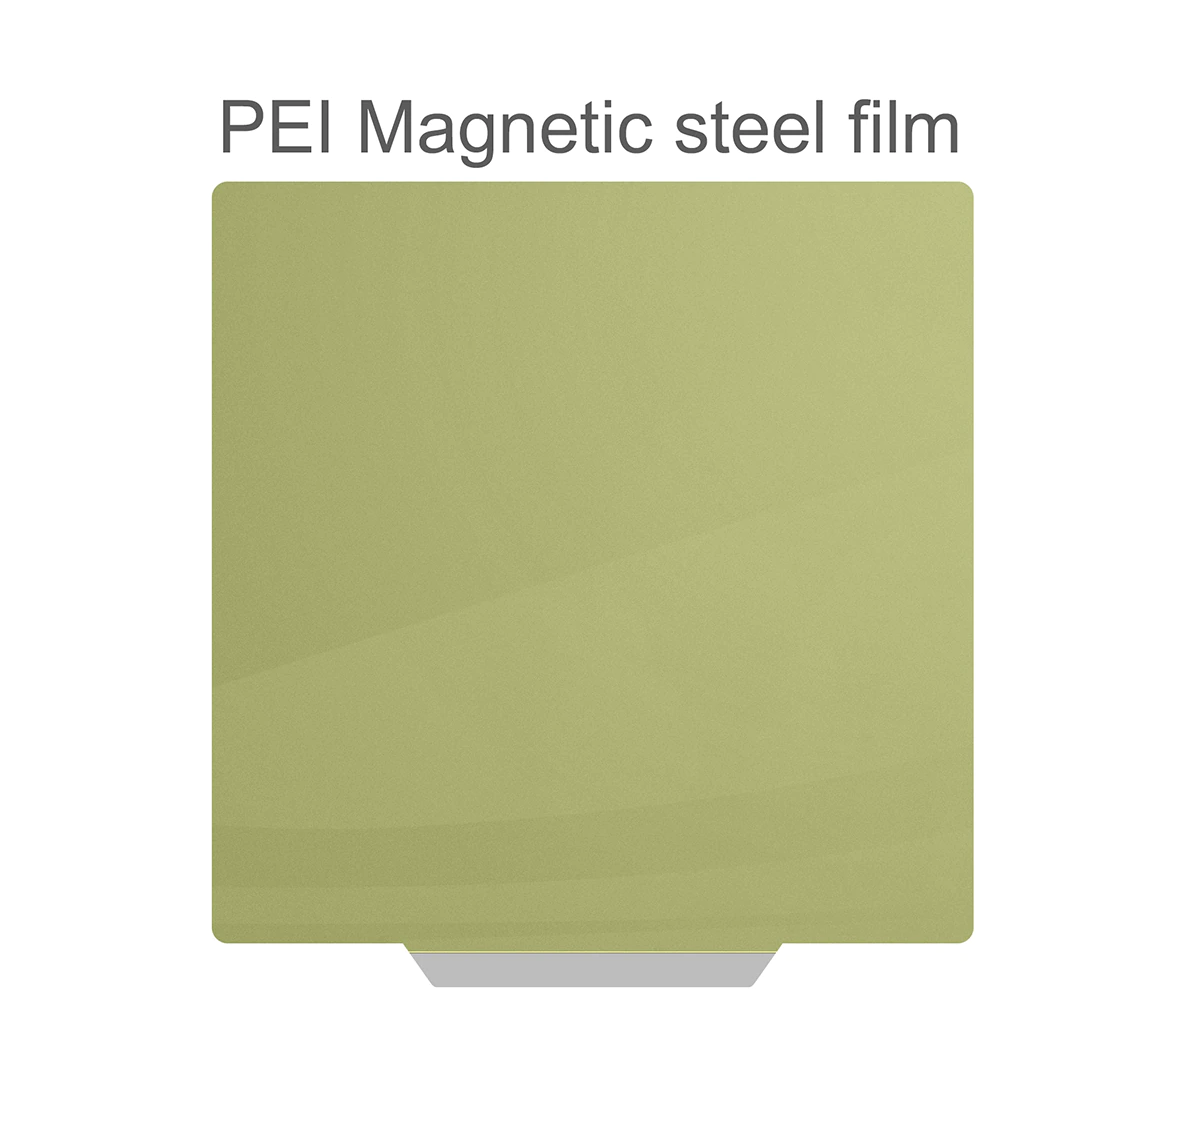 Lamina magnetica imprimible 61 cm de ancho - Prodigystore